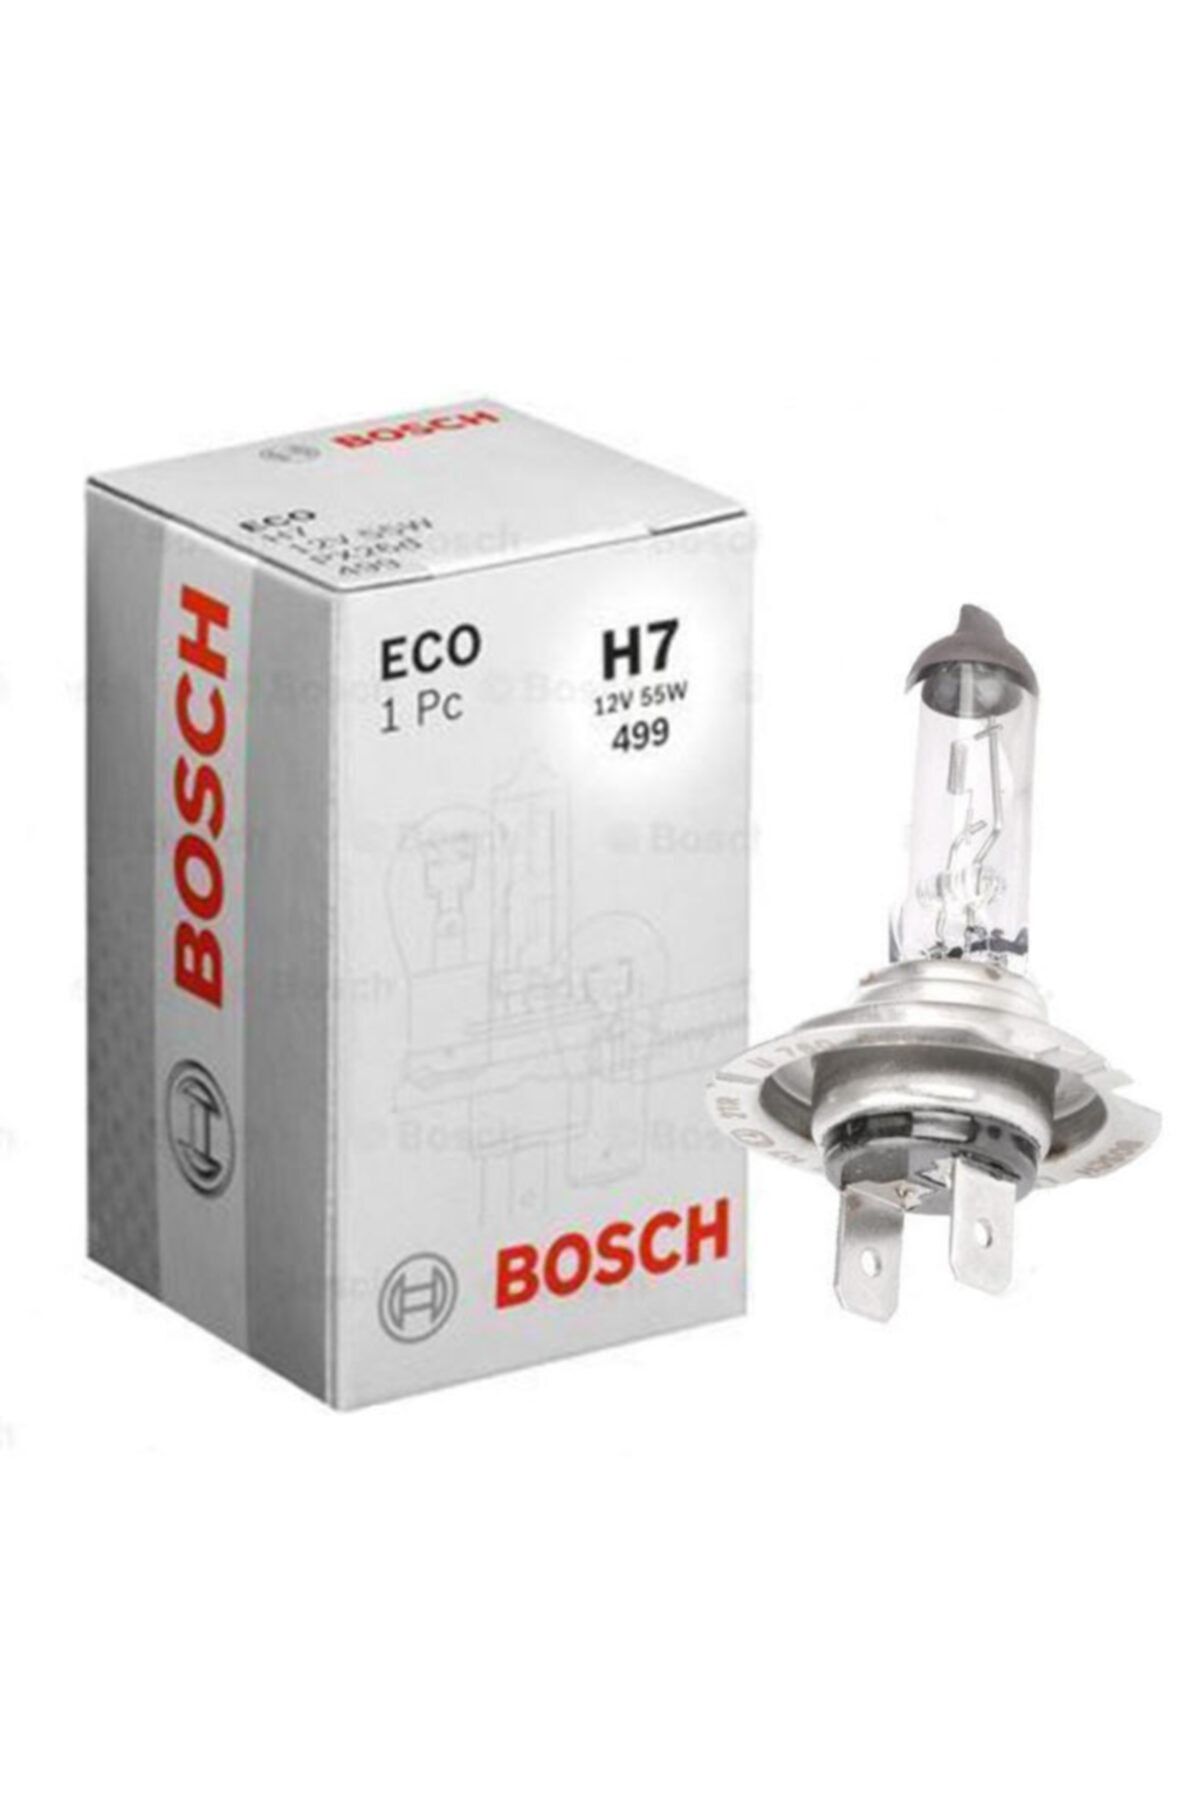 Bosch h7 12v 55w. 1987302804 Bosch. Bosch Eco h7. BOCXOD h7. Bosch h7 659.